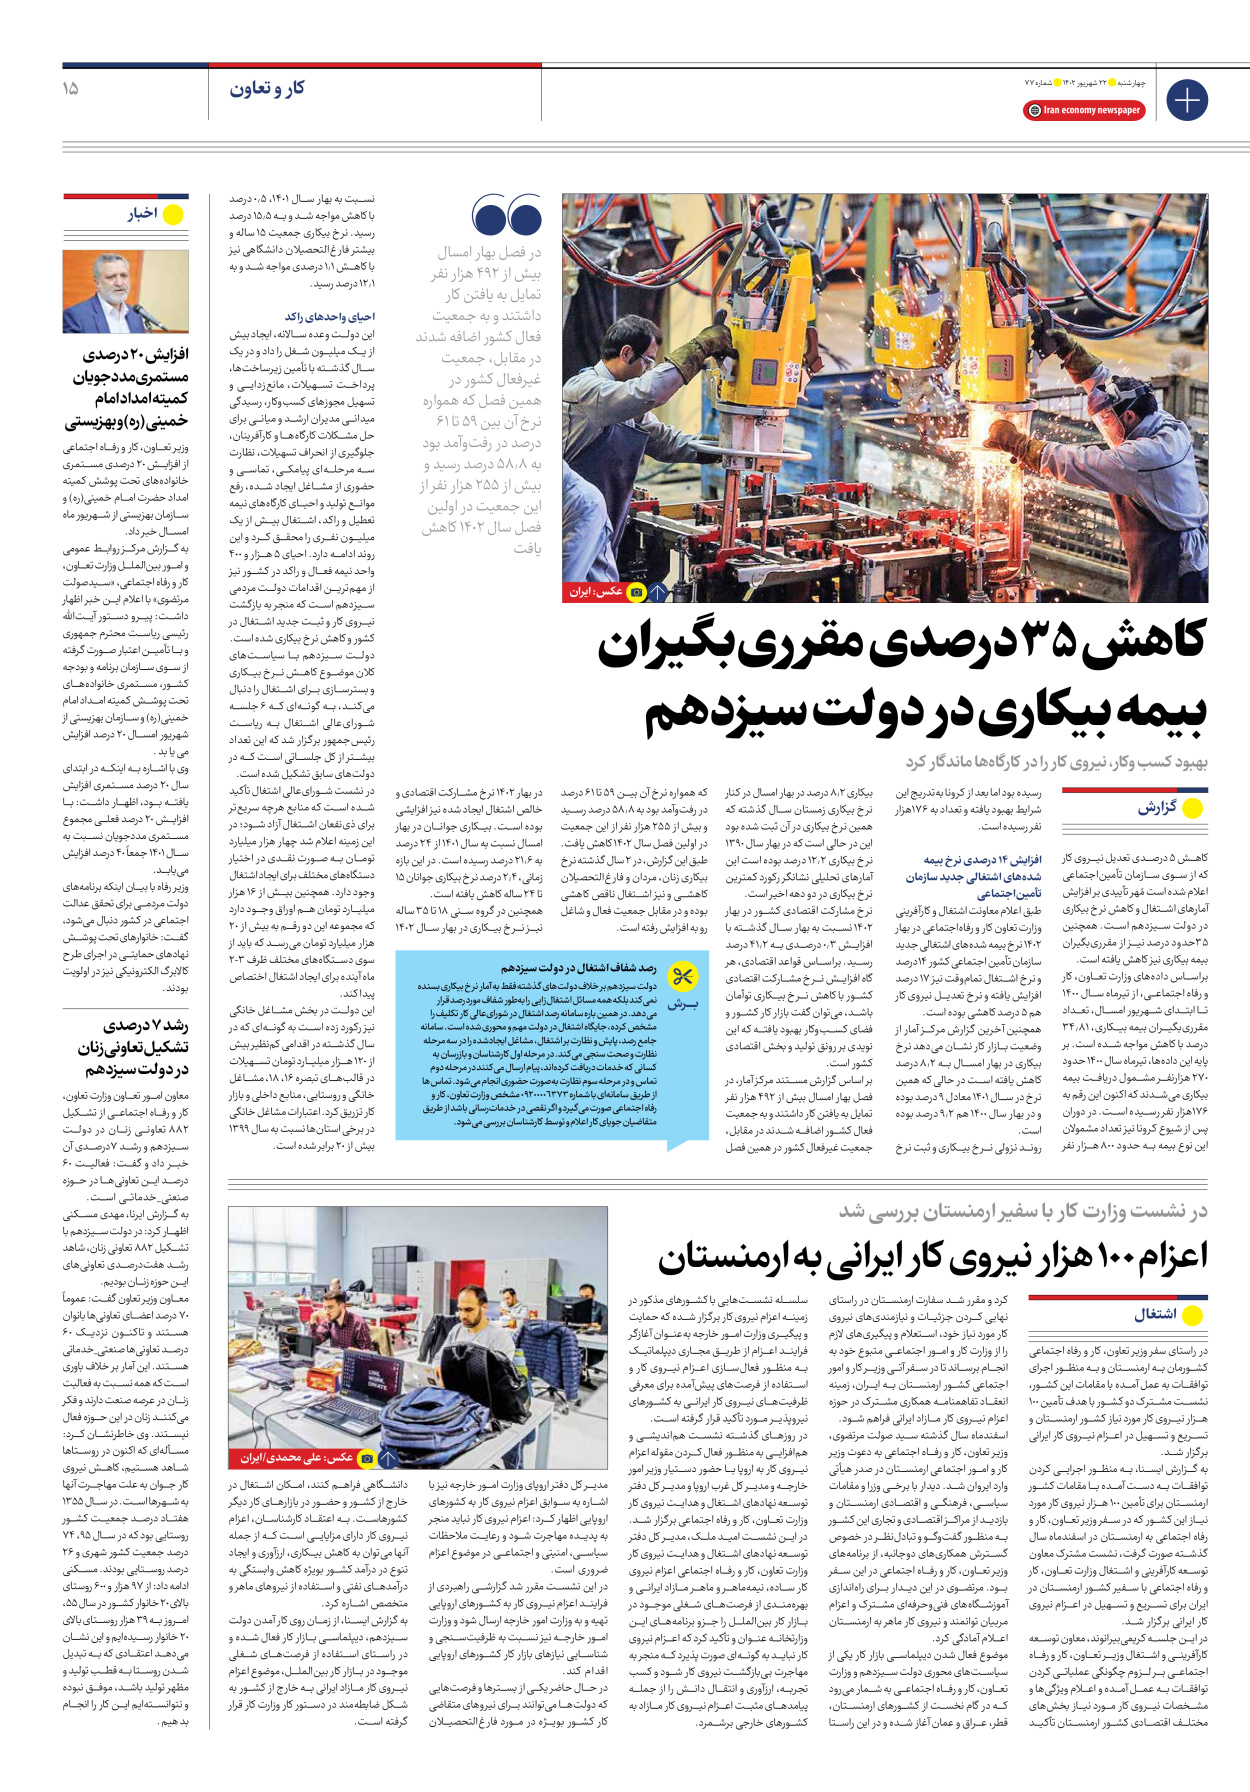 روزنامه ایران اقتصادی - شماره هفتاد و هفت - ۲۲ شهریور ۱۴۰۲ - صفحه ۱۵